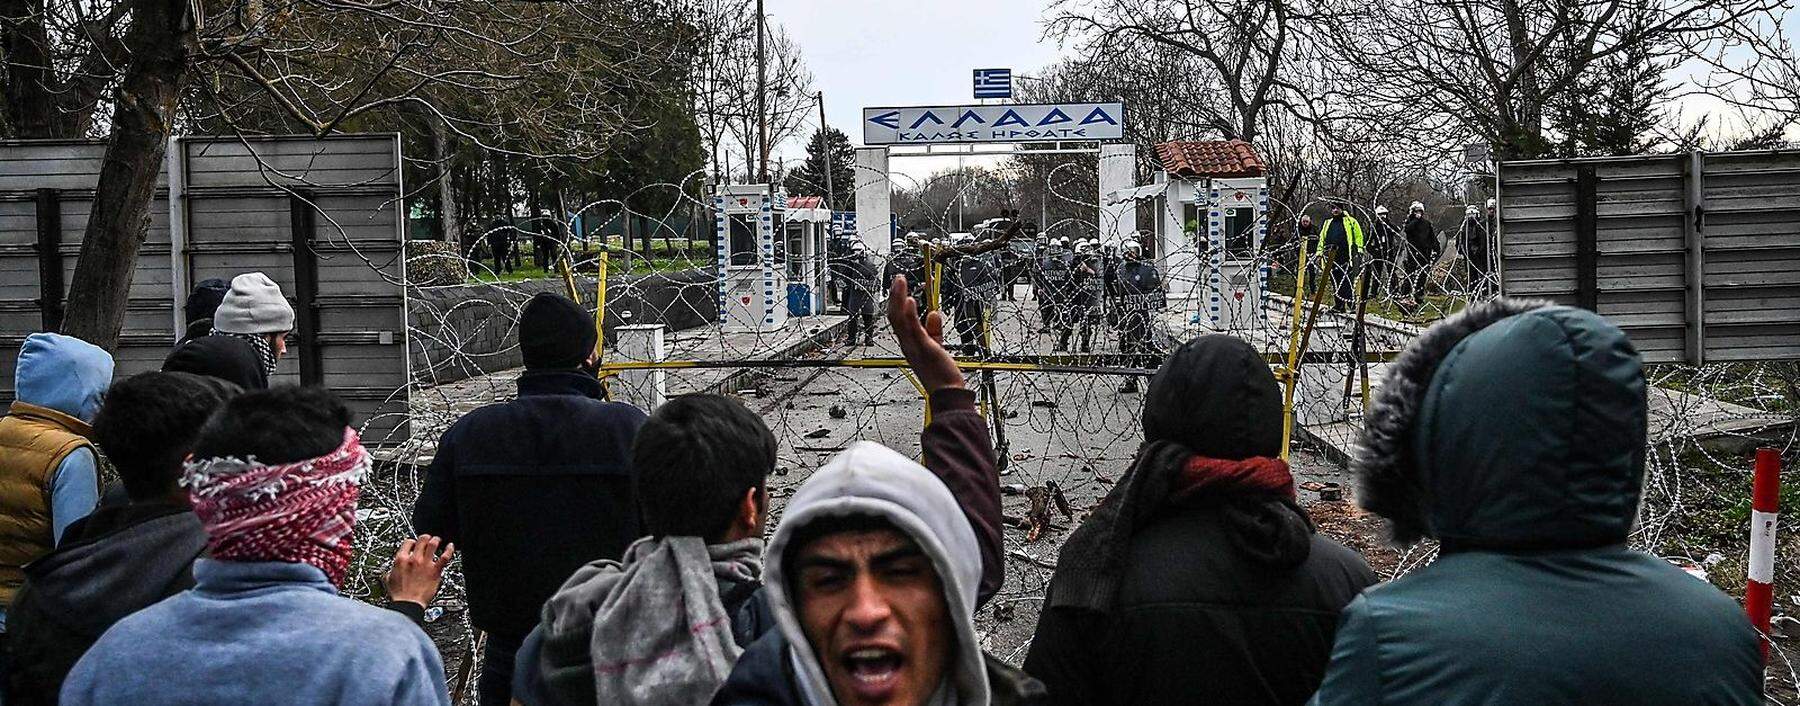 Migranten an der türkisch-griechischen Grenze im Februar 2020.